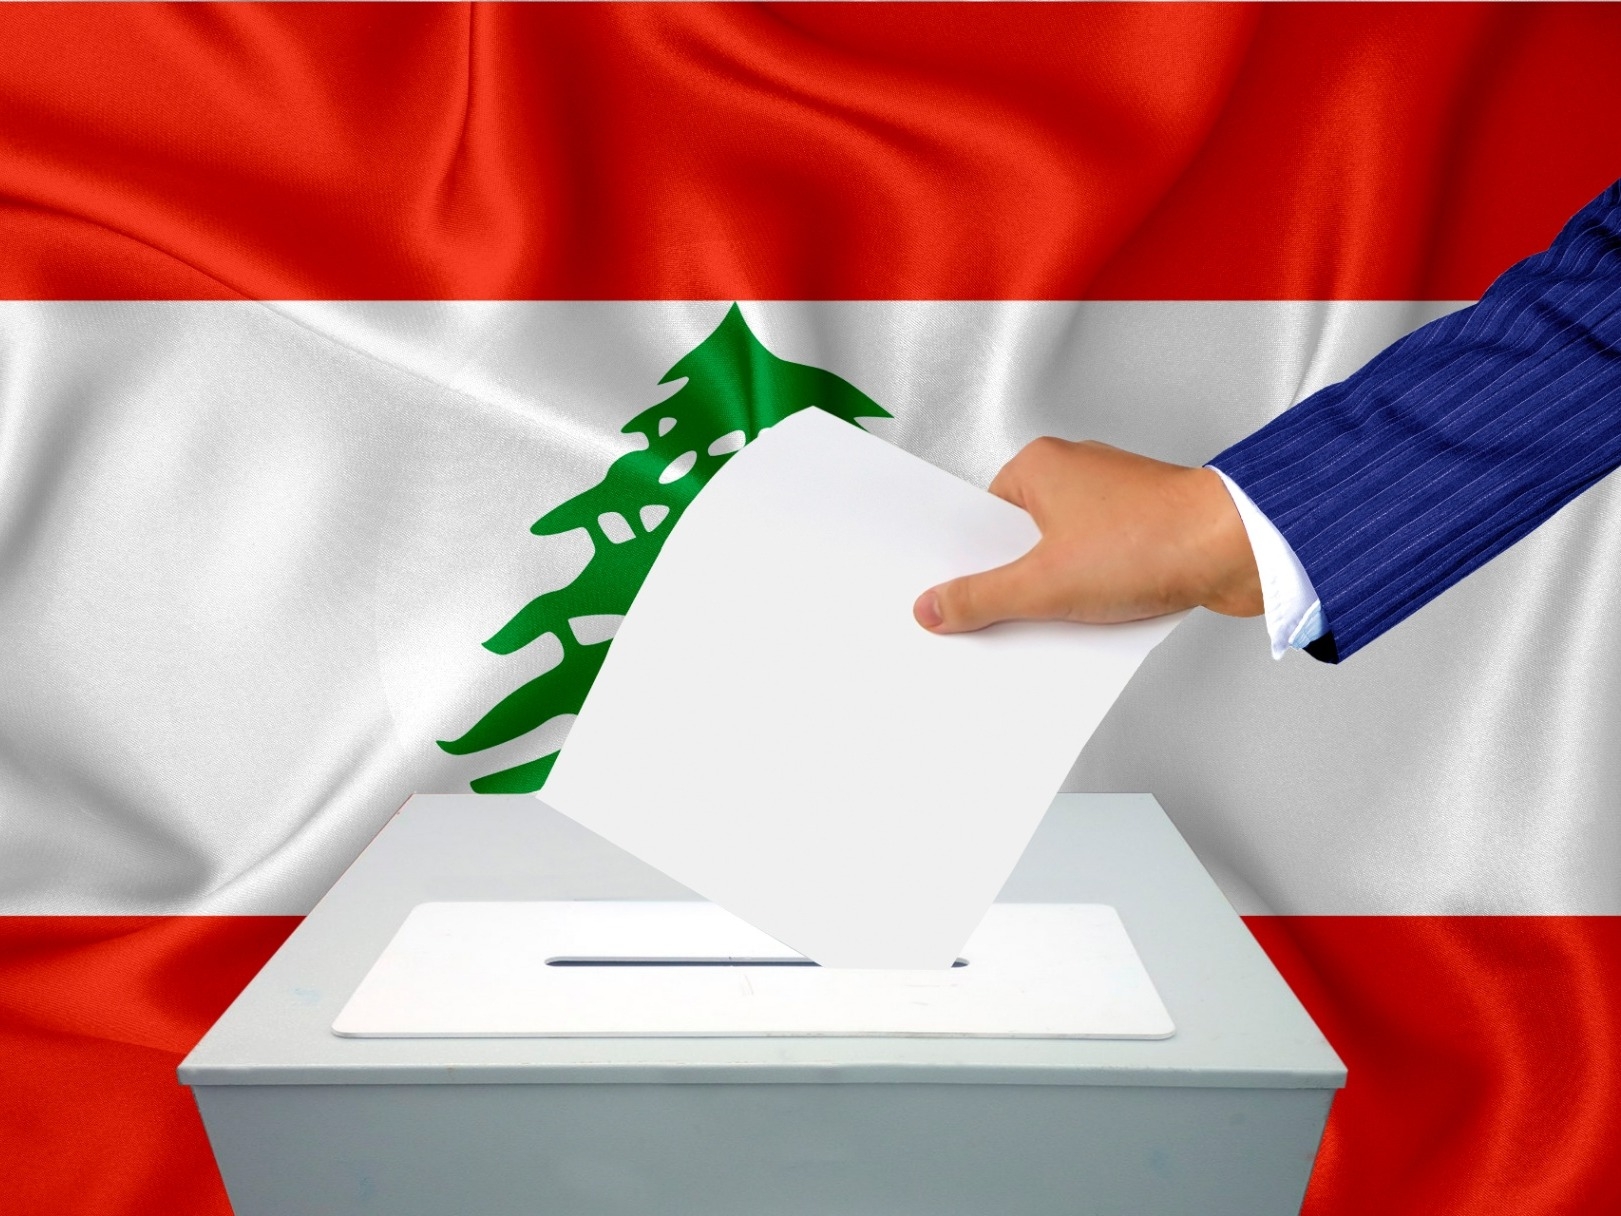 د. زياد علوش- ماذا يريد اللبنانيون من الانتخابات النيابية المقبلة